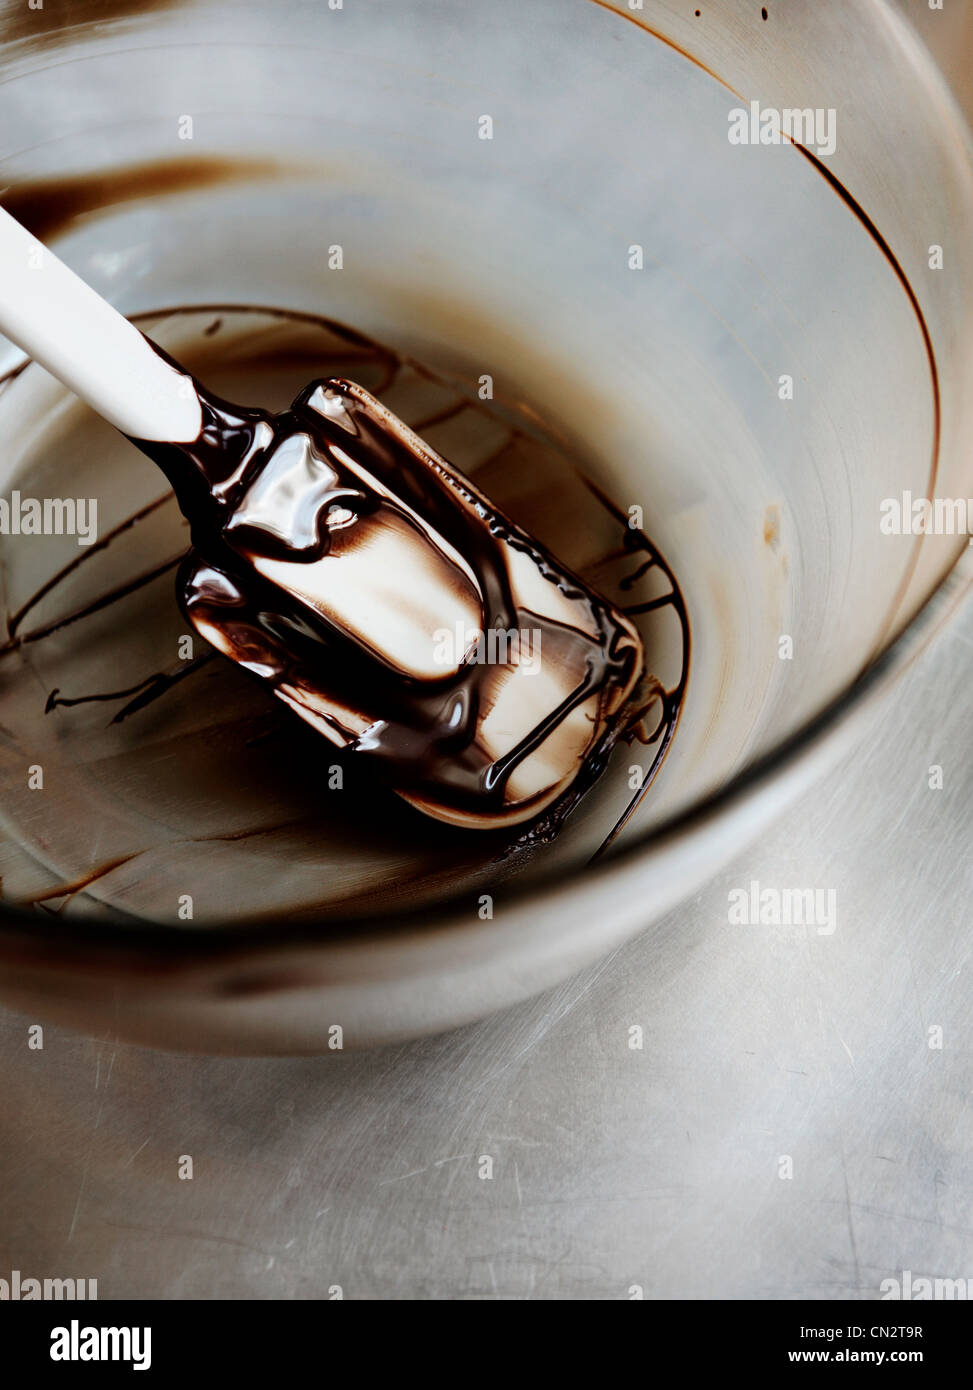 Cioccolato fondente fuso nel recipiente di miscelazione con la spatola Foto Stock